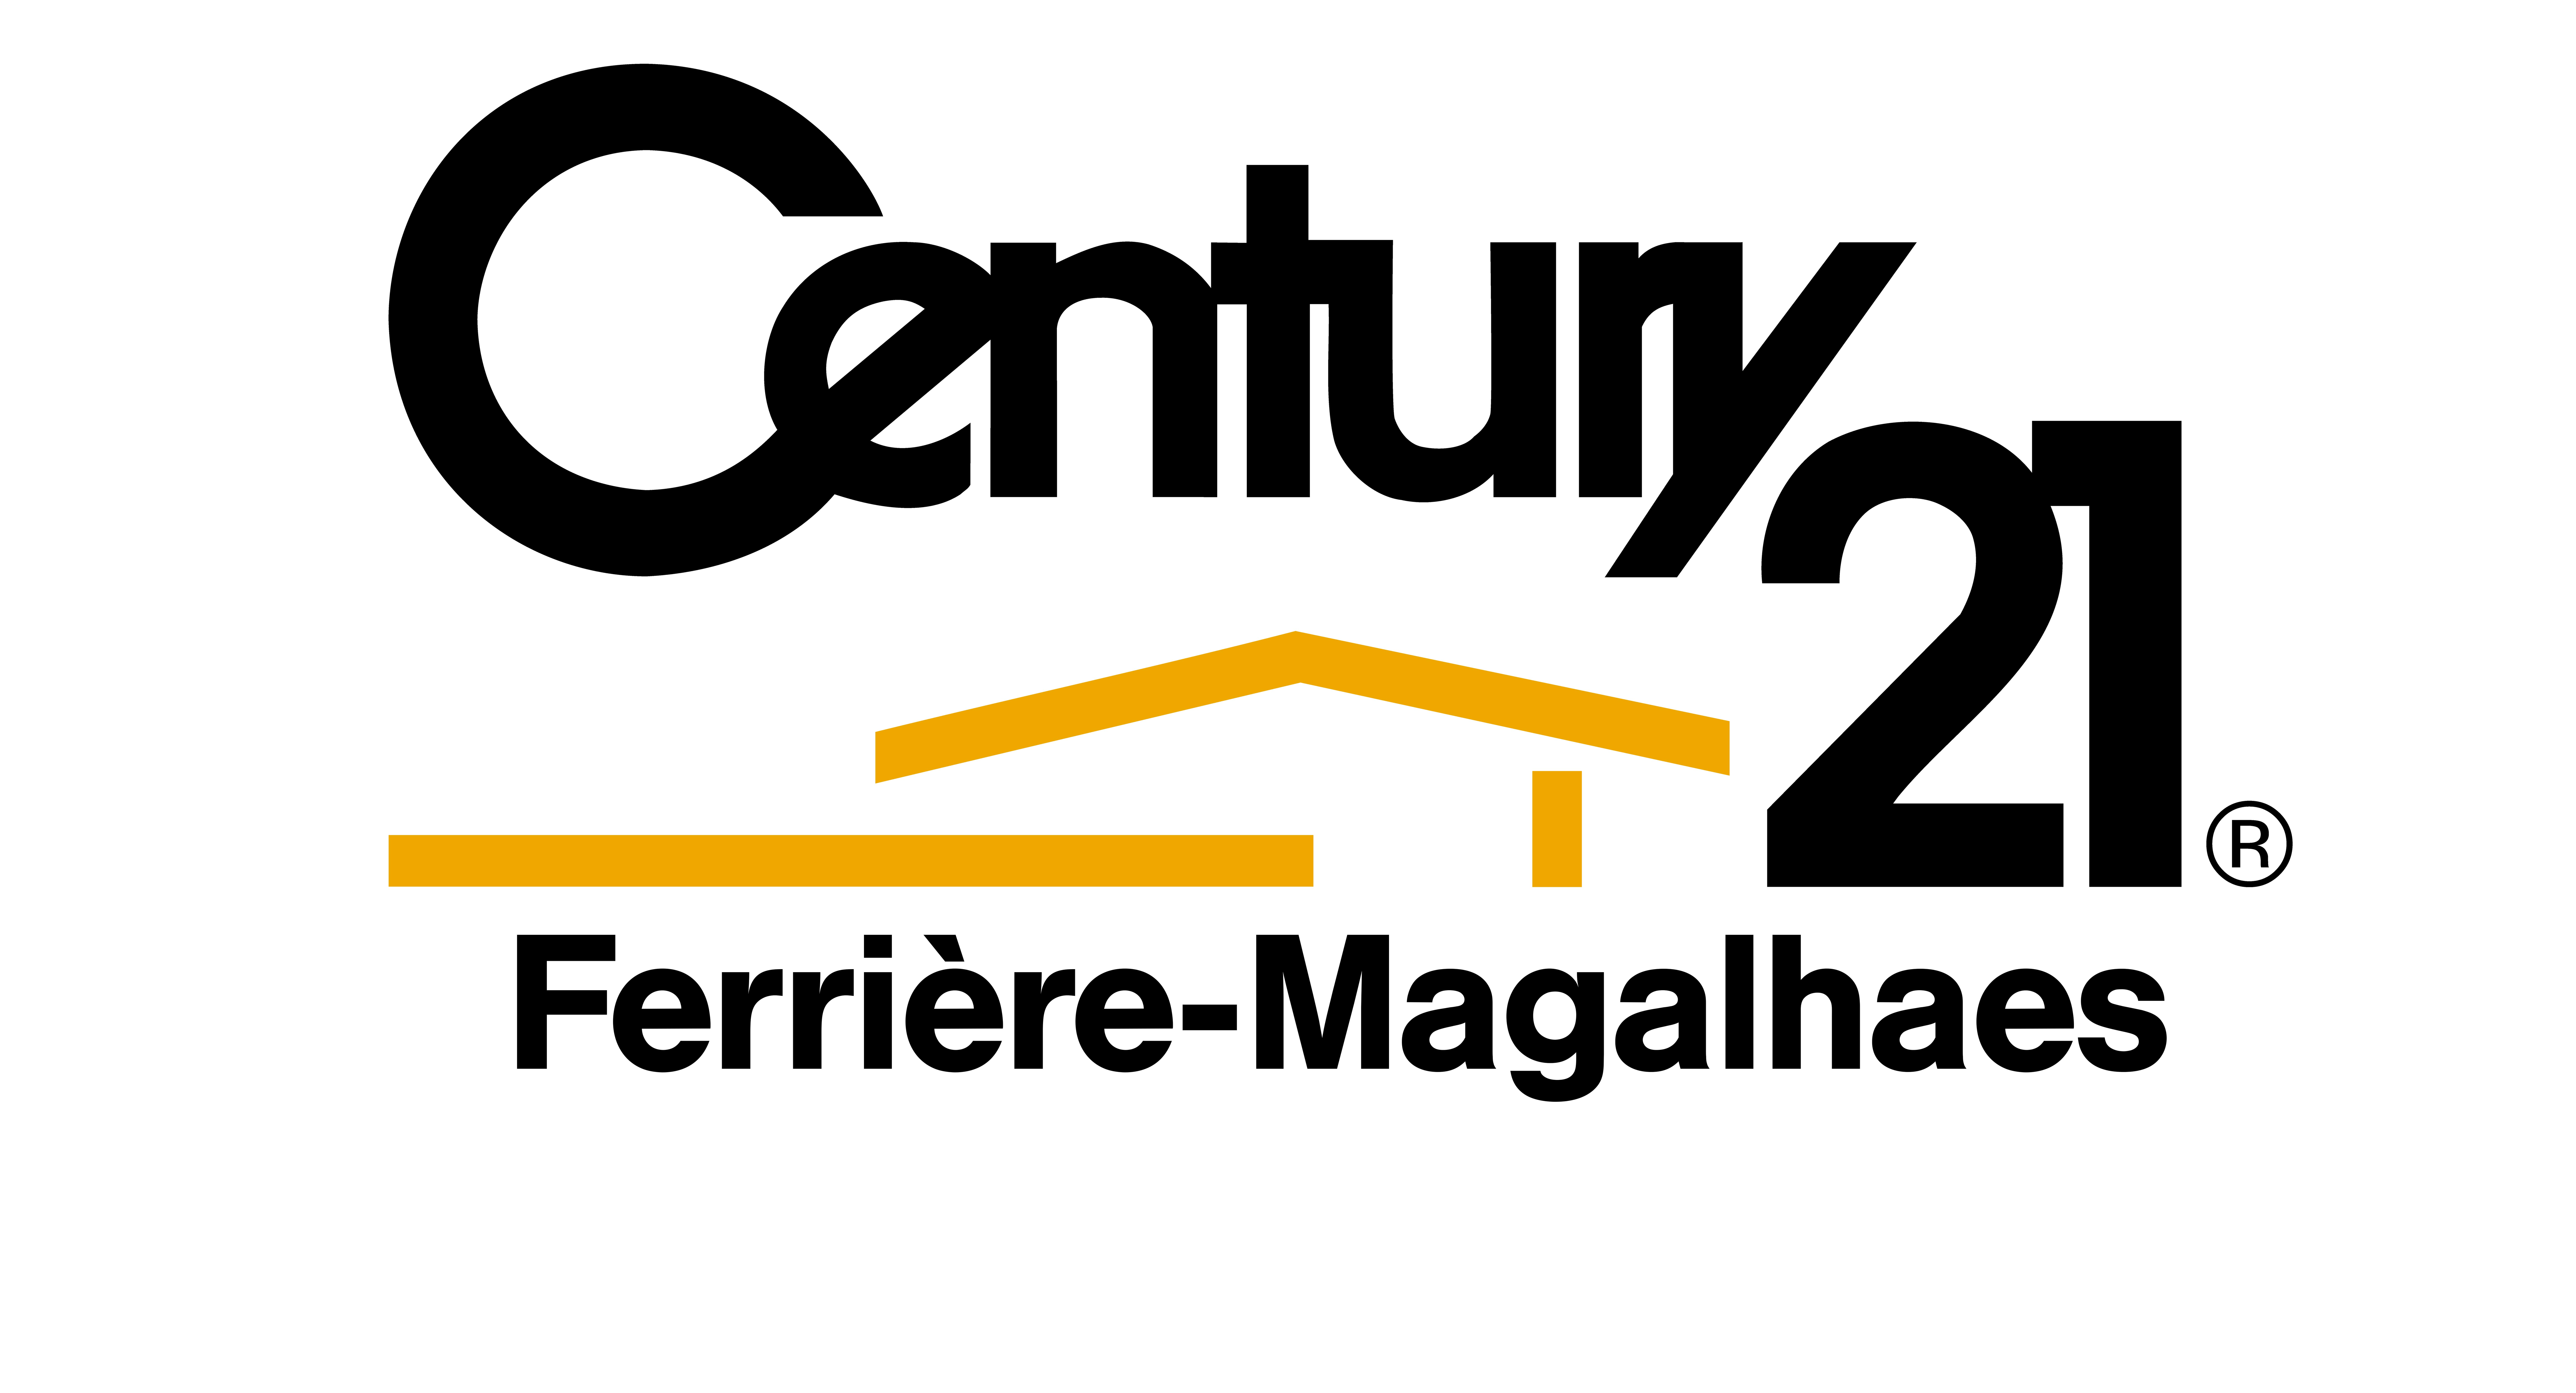 CENTURY 21 - FERRIERE-MAGALHAES